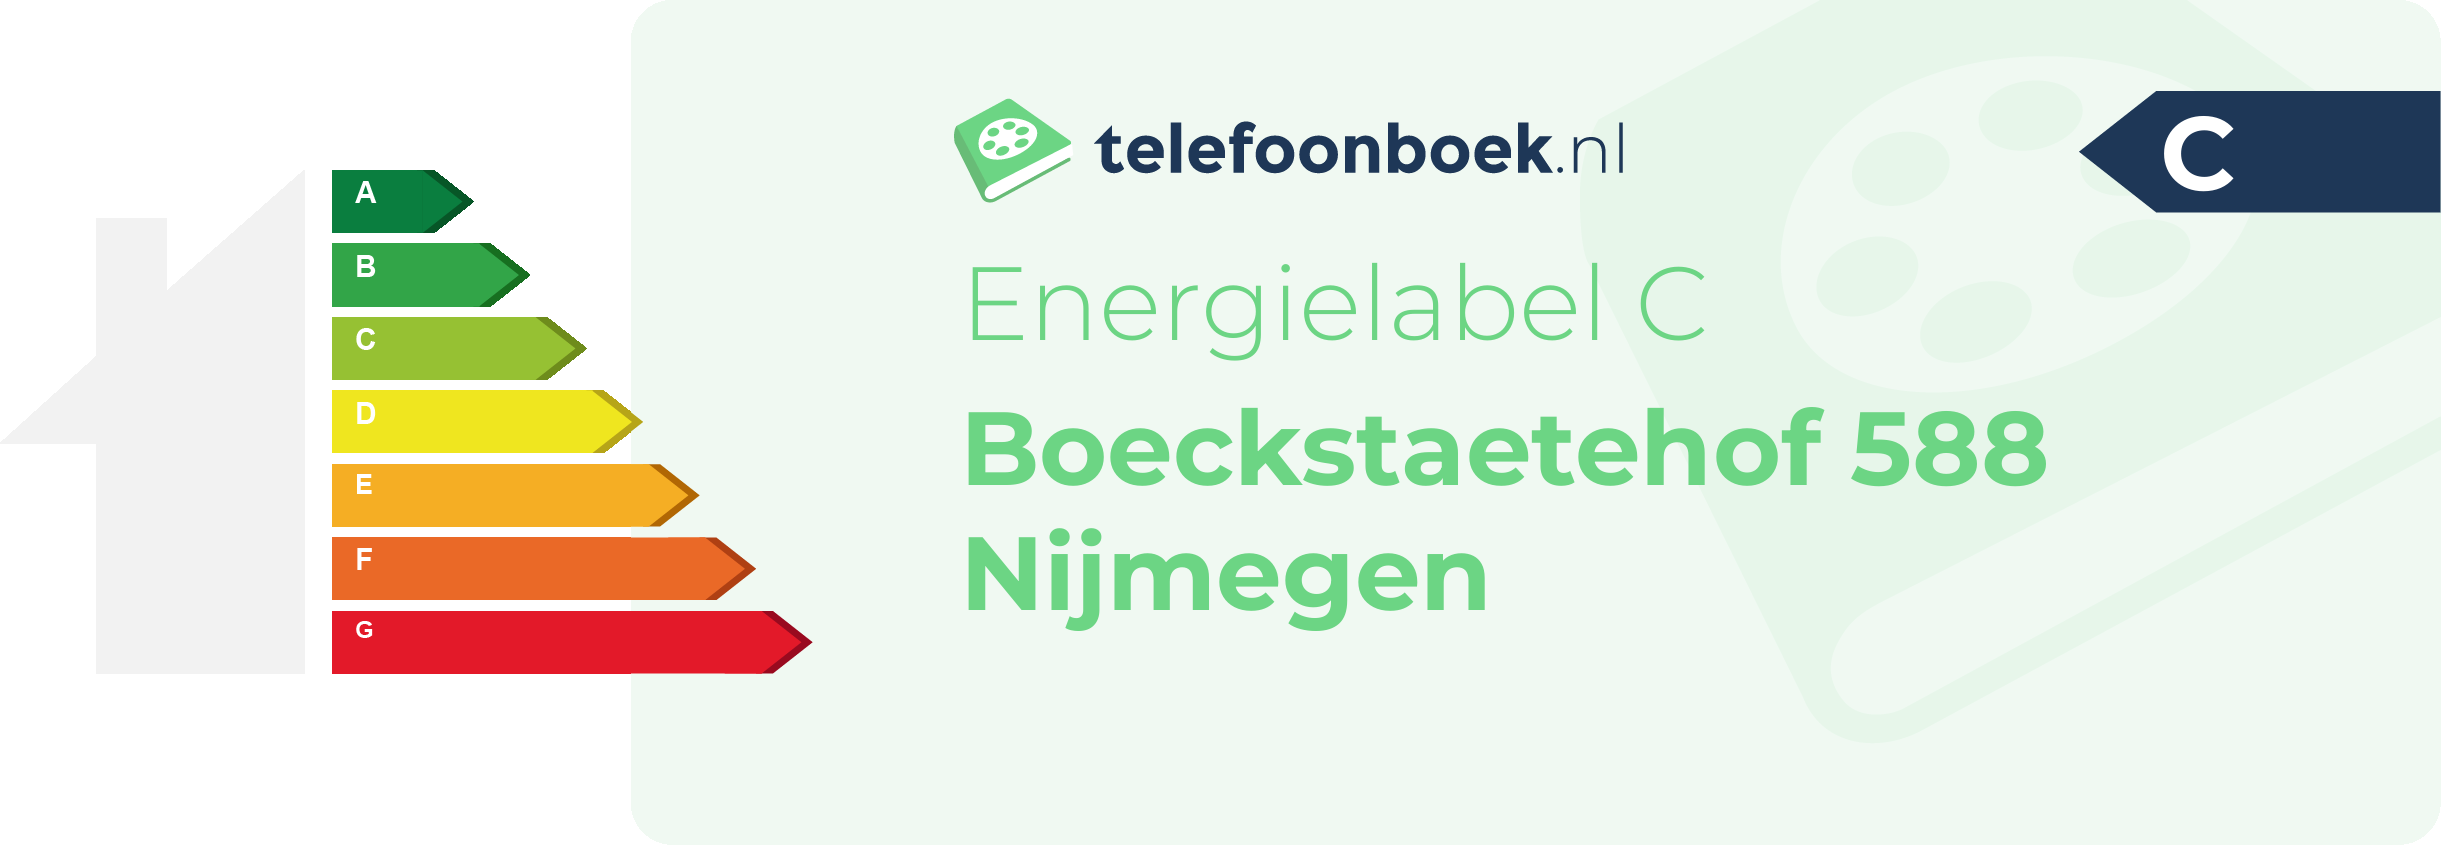 Energielabel Boeckstaetehof 588 Nijmegen